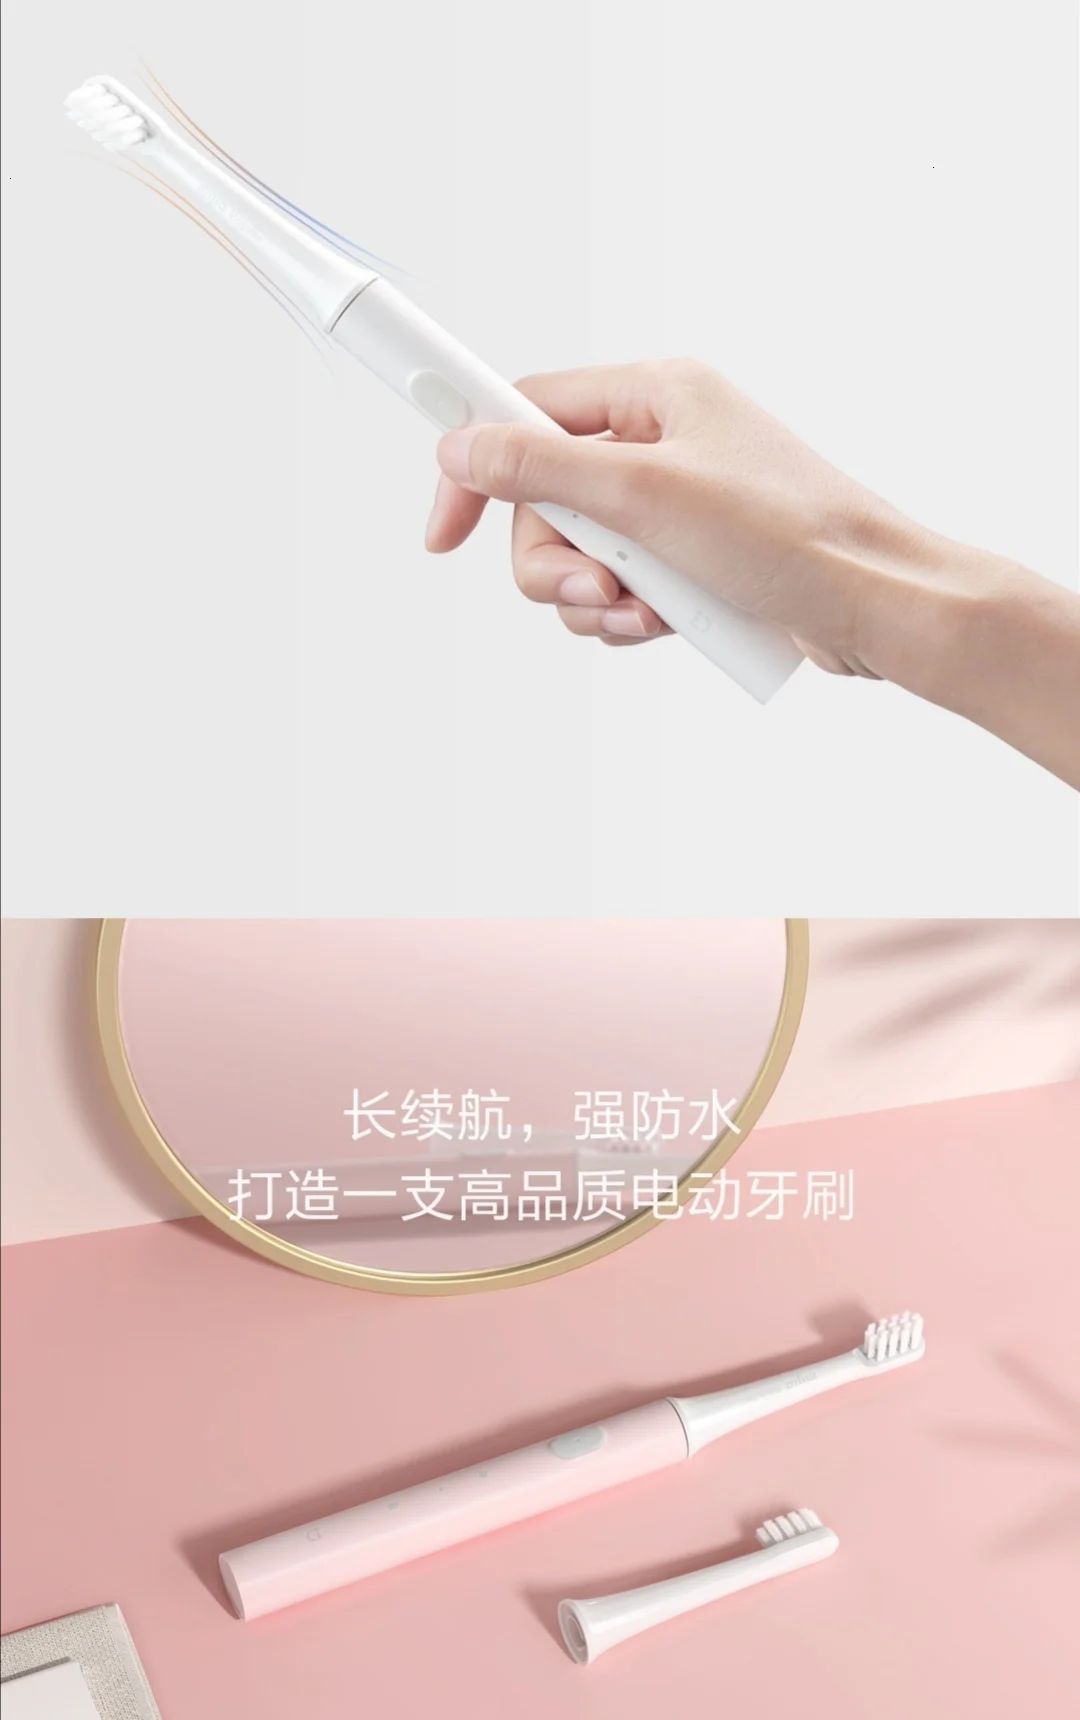 Xiao mi jia T100 mi умная электрическая зубная щетка двухскоростной режим очистки Xio mi HOME 30 день последняя машина 46 г зубная щетка